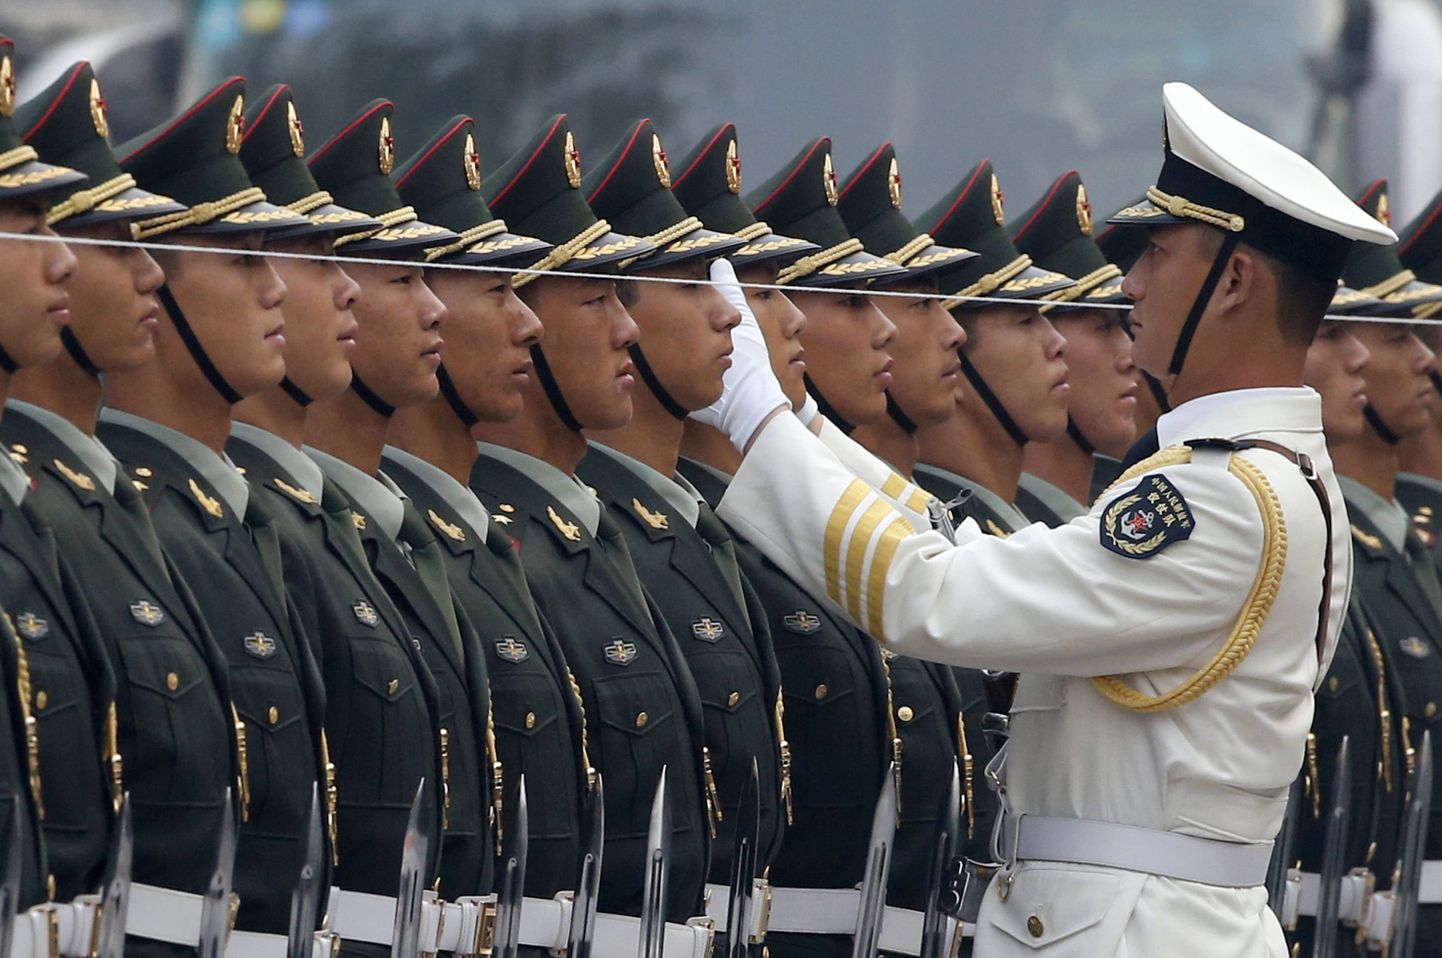 Hiina armee kasutab nööre, et kõik sõdurid täpselt ühe joone taha rivistada.